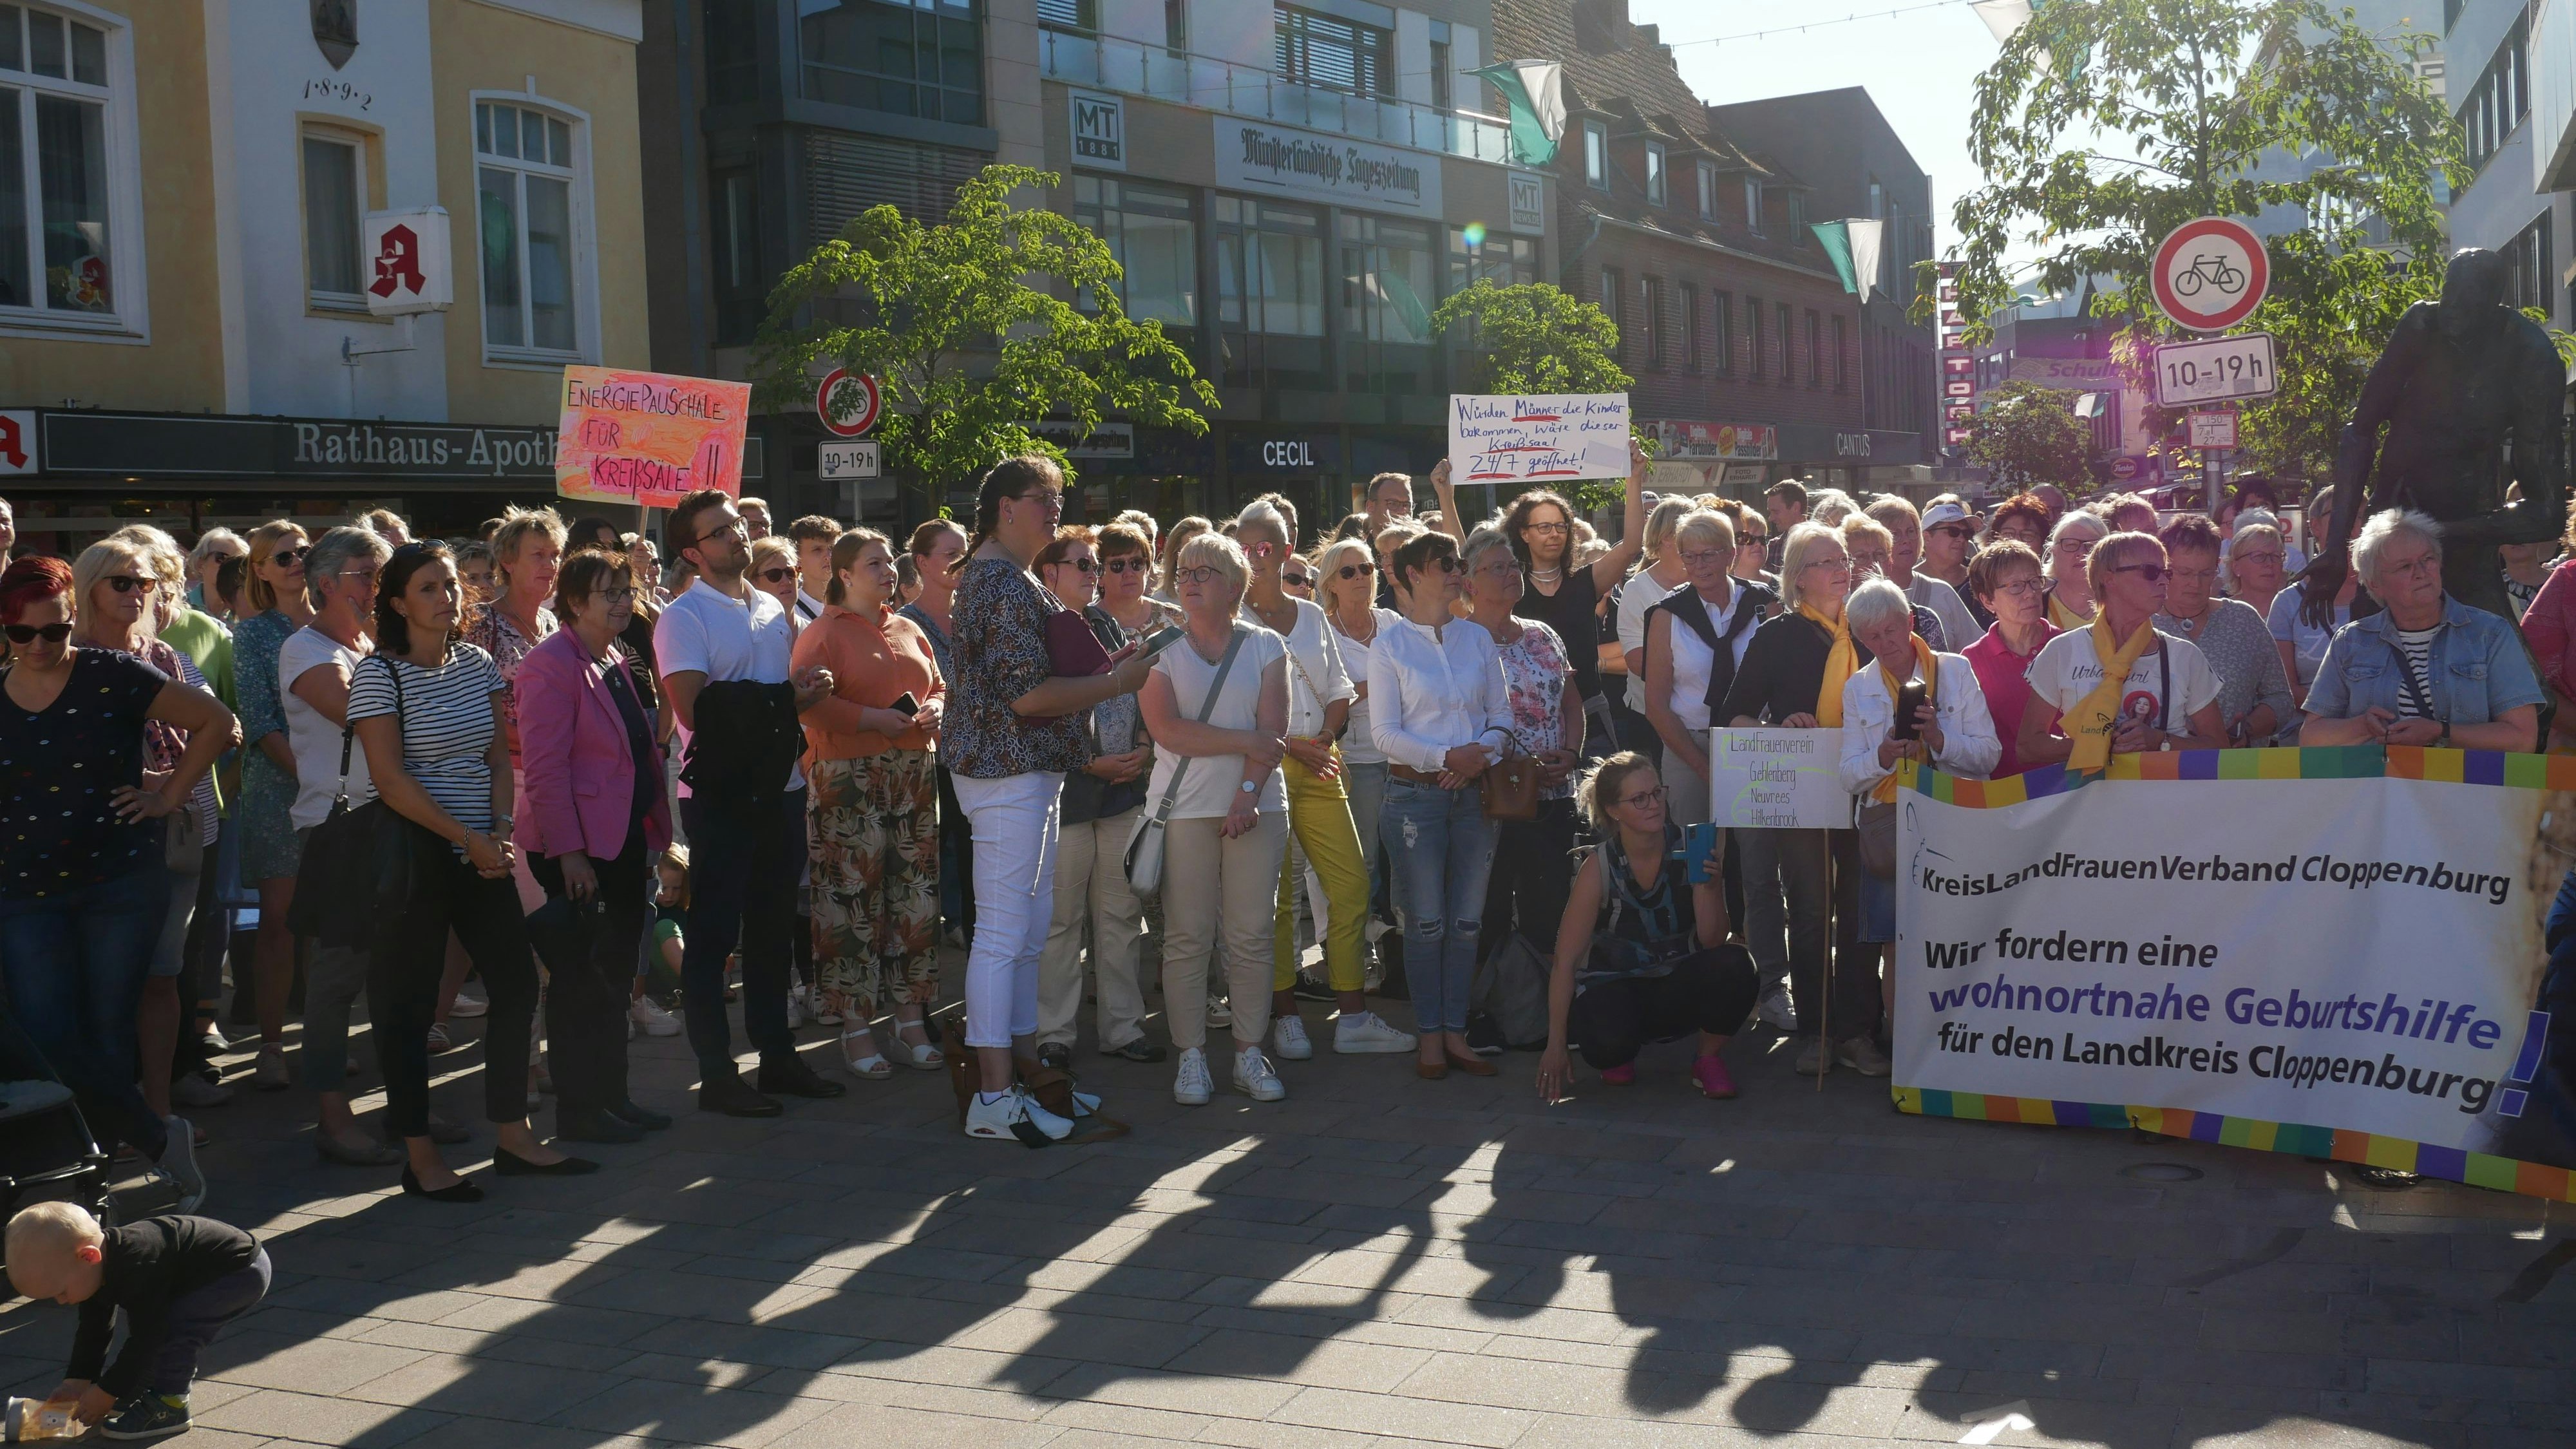 Zahlreiche Menschen versammelten sich in der Cloppenburger Fußgängerzone, um der Forderung einer wohnortnahen Geburtshilfe Ausdruck zu verleihen. Foto: Dickerhoff